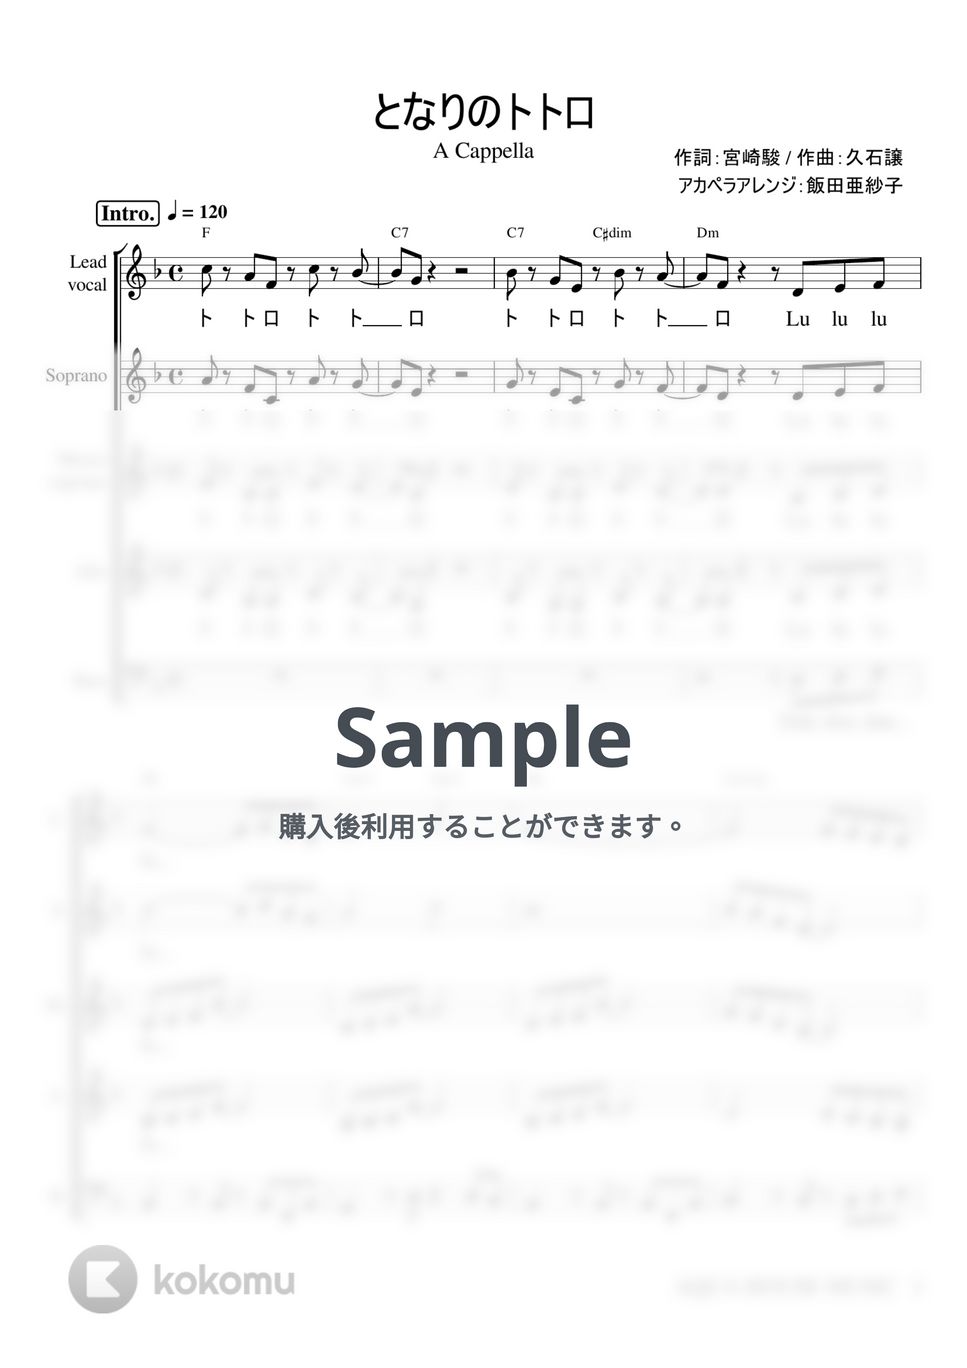 井上 あずみ - となりのトトロ (アカペラ楽譜♪５声ボイパなし) by 飯田 亜紗子